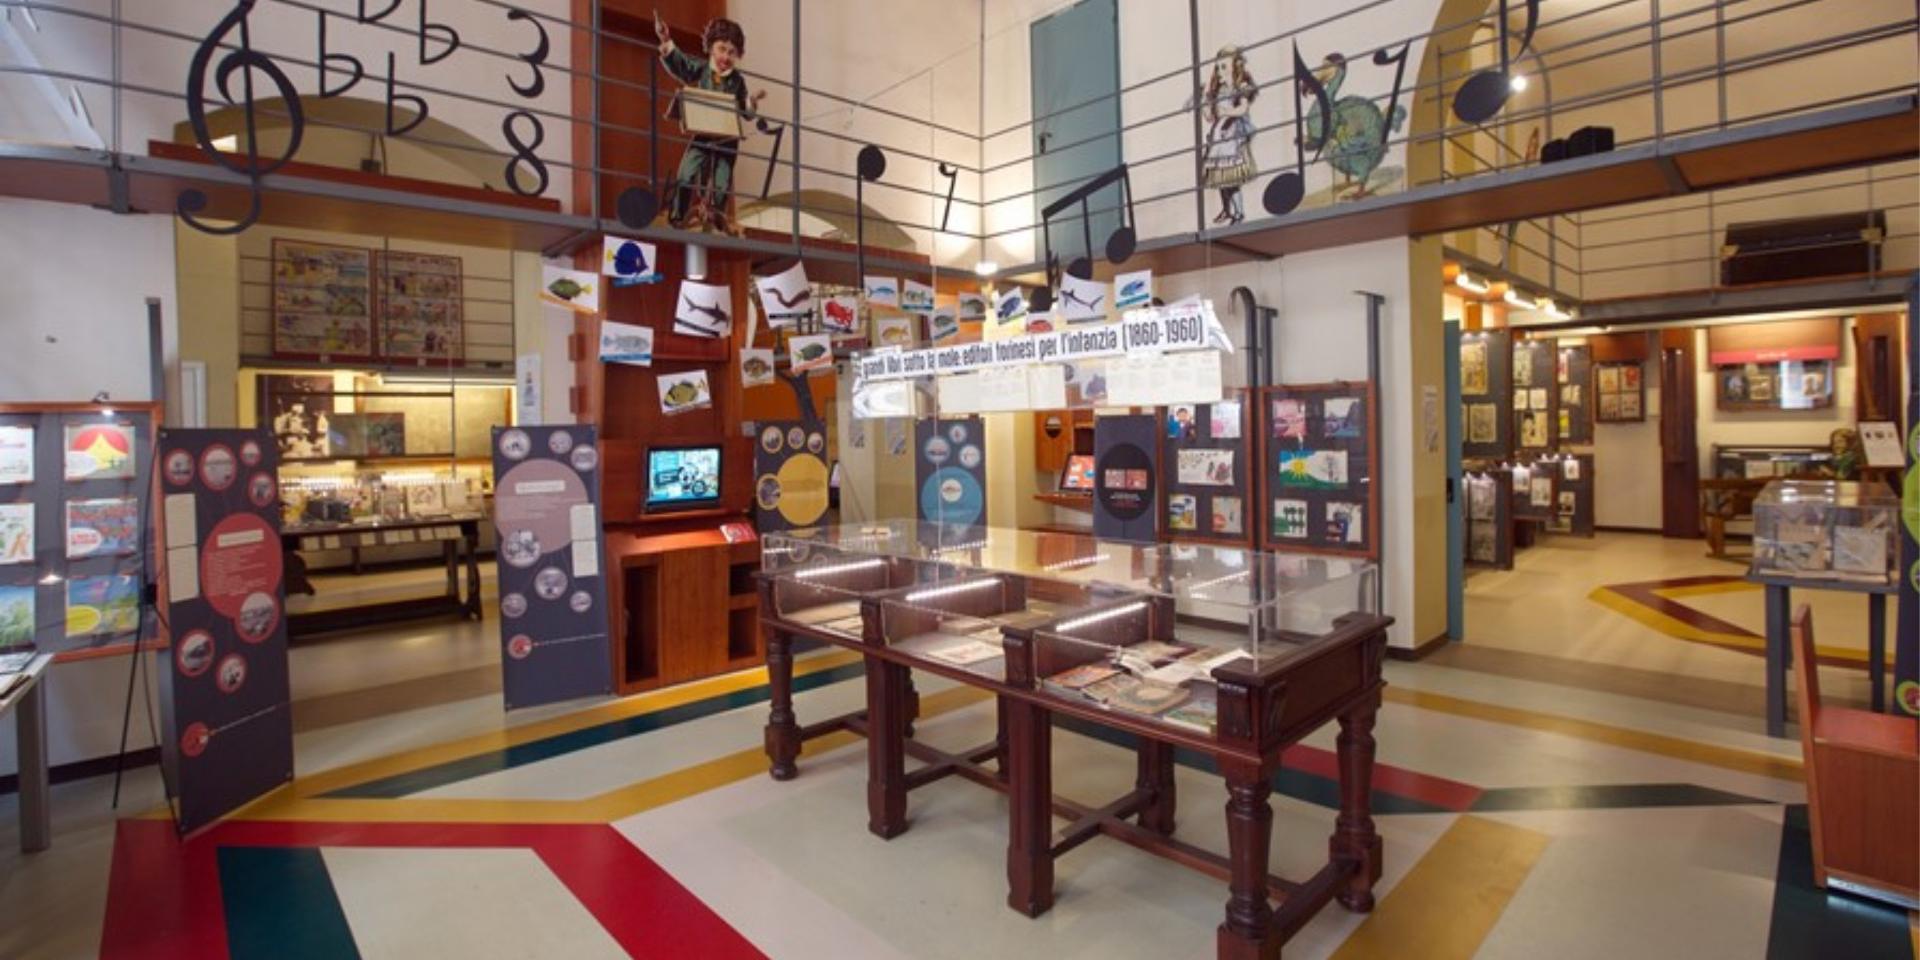 Fondazione Tancredi di Barolo - School and Childhood books Museum